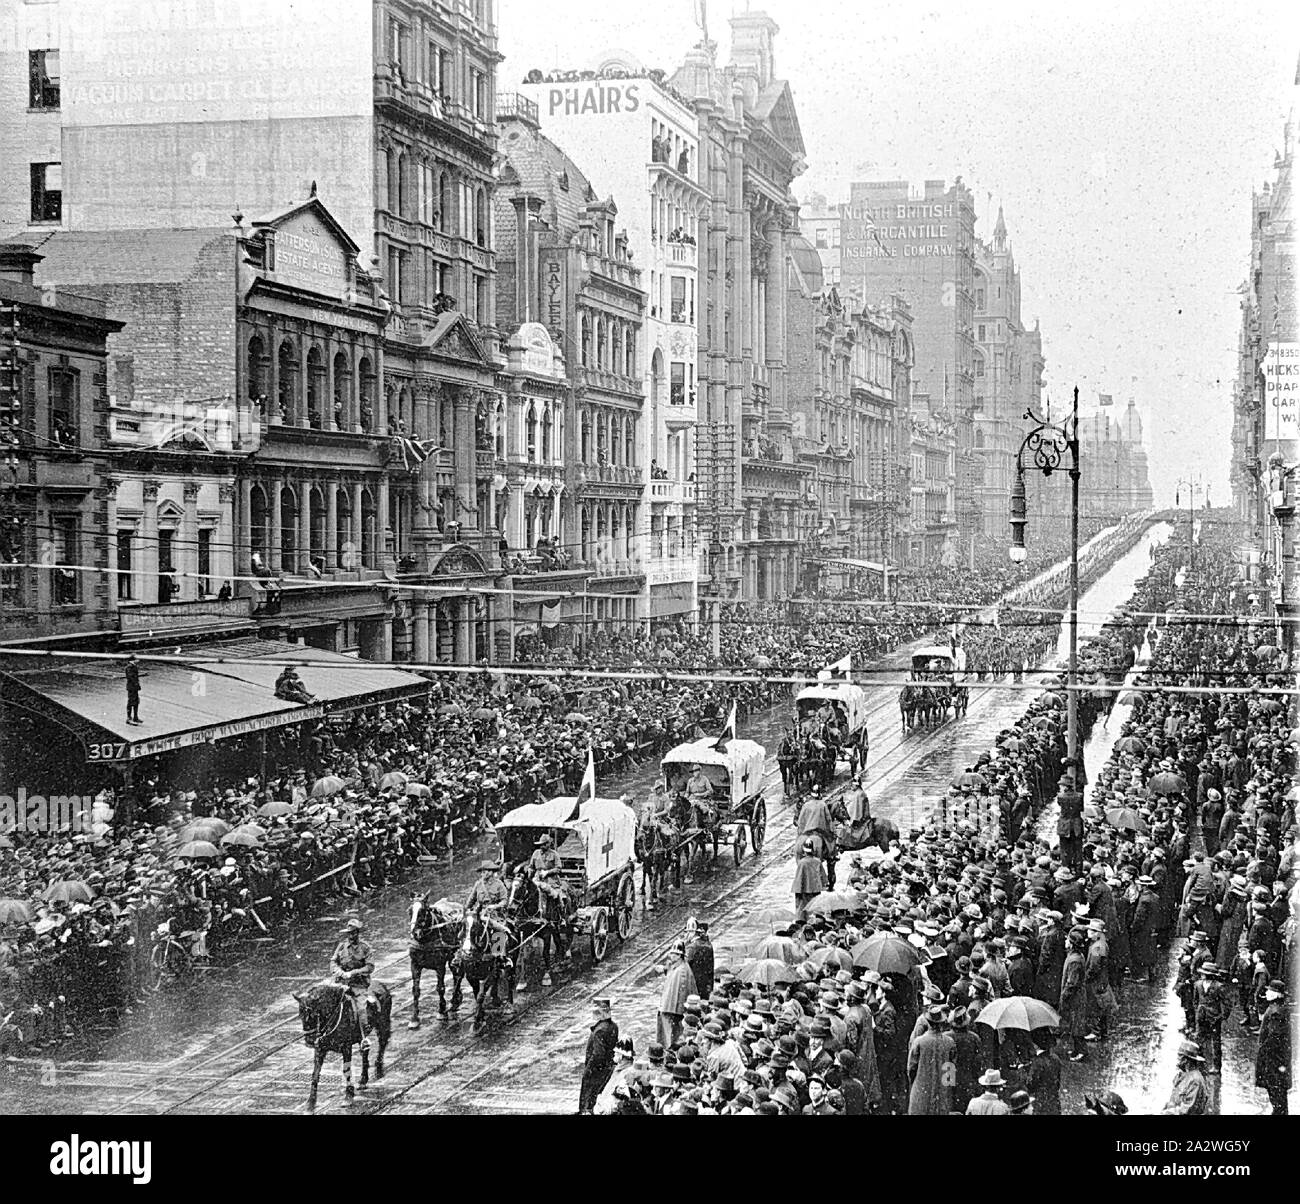 Négatif - Les ambulances à cheval à la tête d'une parade de soldats, Swanston Street, Melbourne, Victoria, en 1914, les ambulances à cheval à la tête d'une parade de soldats Banque D'Images